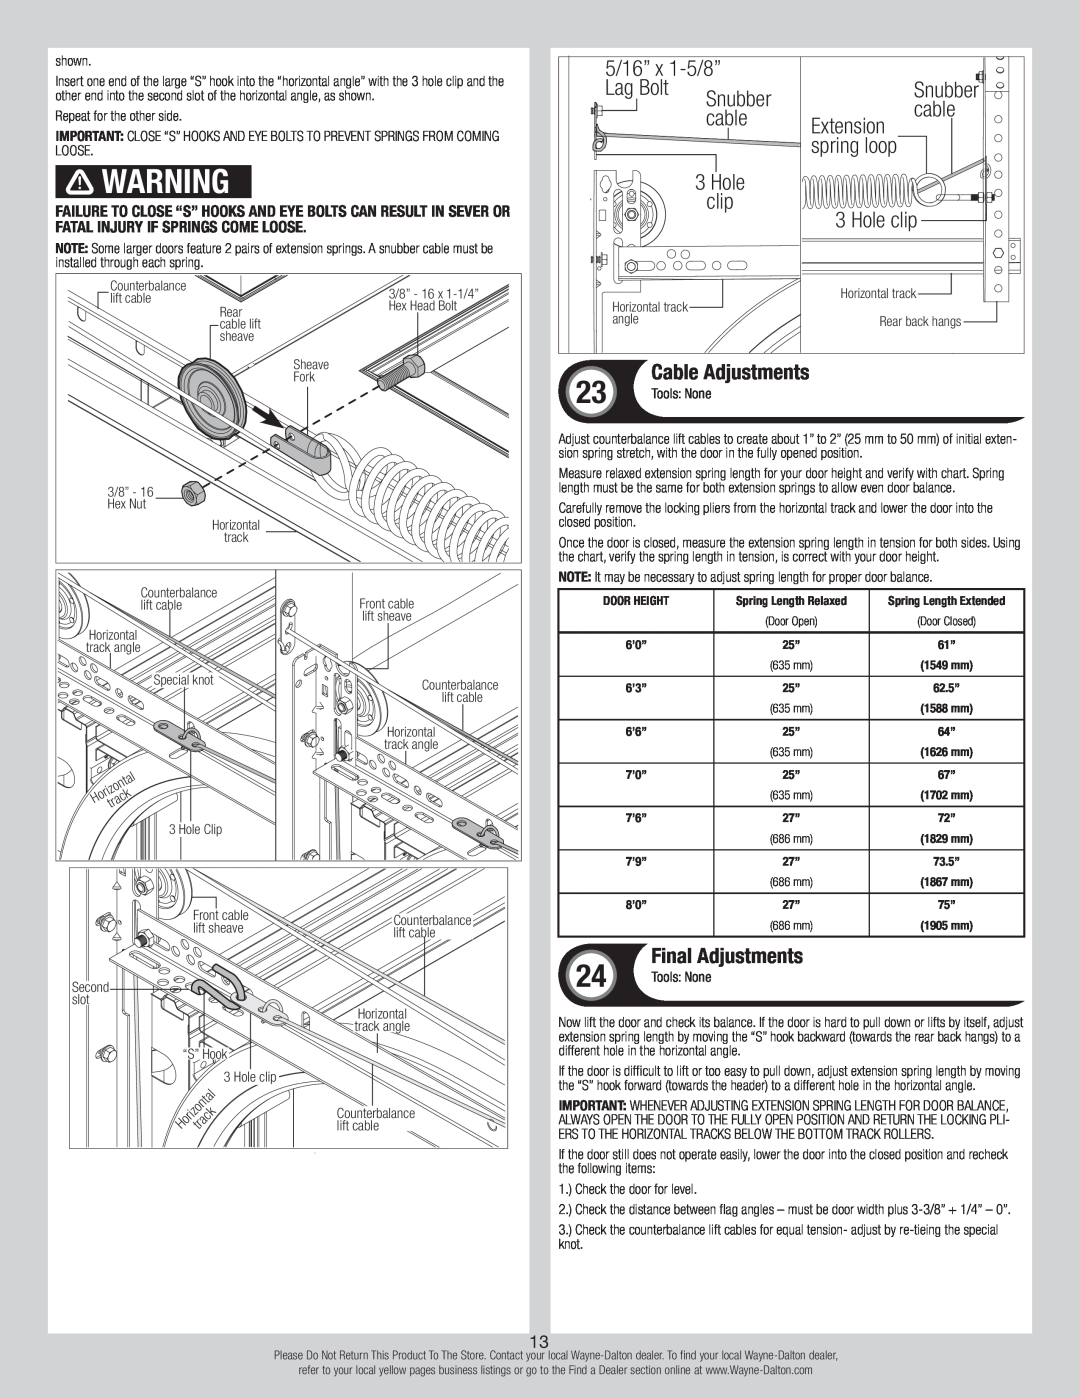 Wayne-Dalton 8700 Cable Adjustments, Final Adjustments, 5/16” x 1-5/8”, Lag Bolt, Snubber, cable, Extension, Hole, clip 